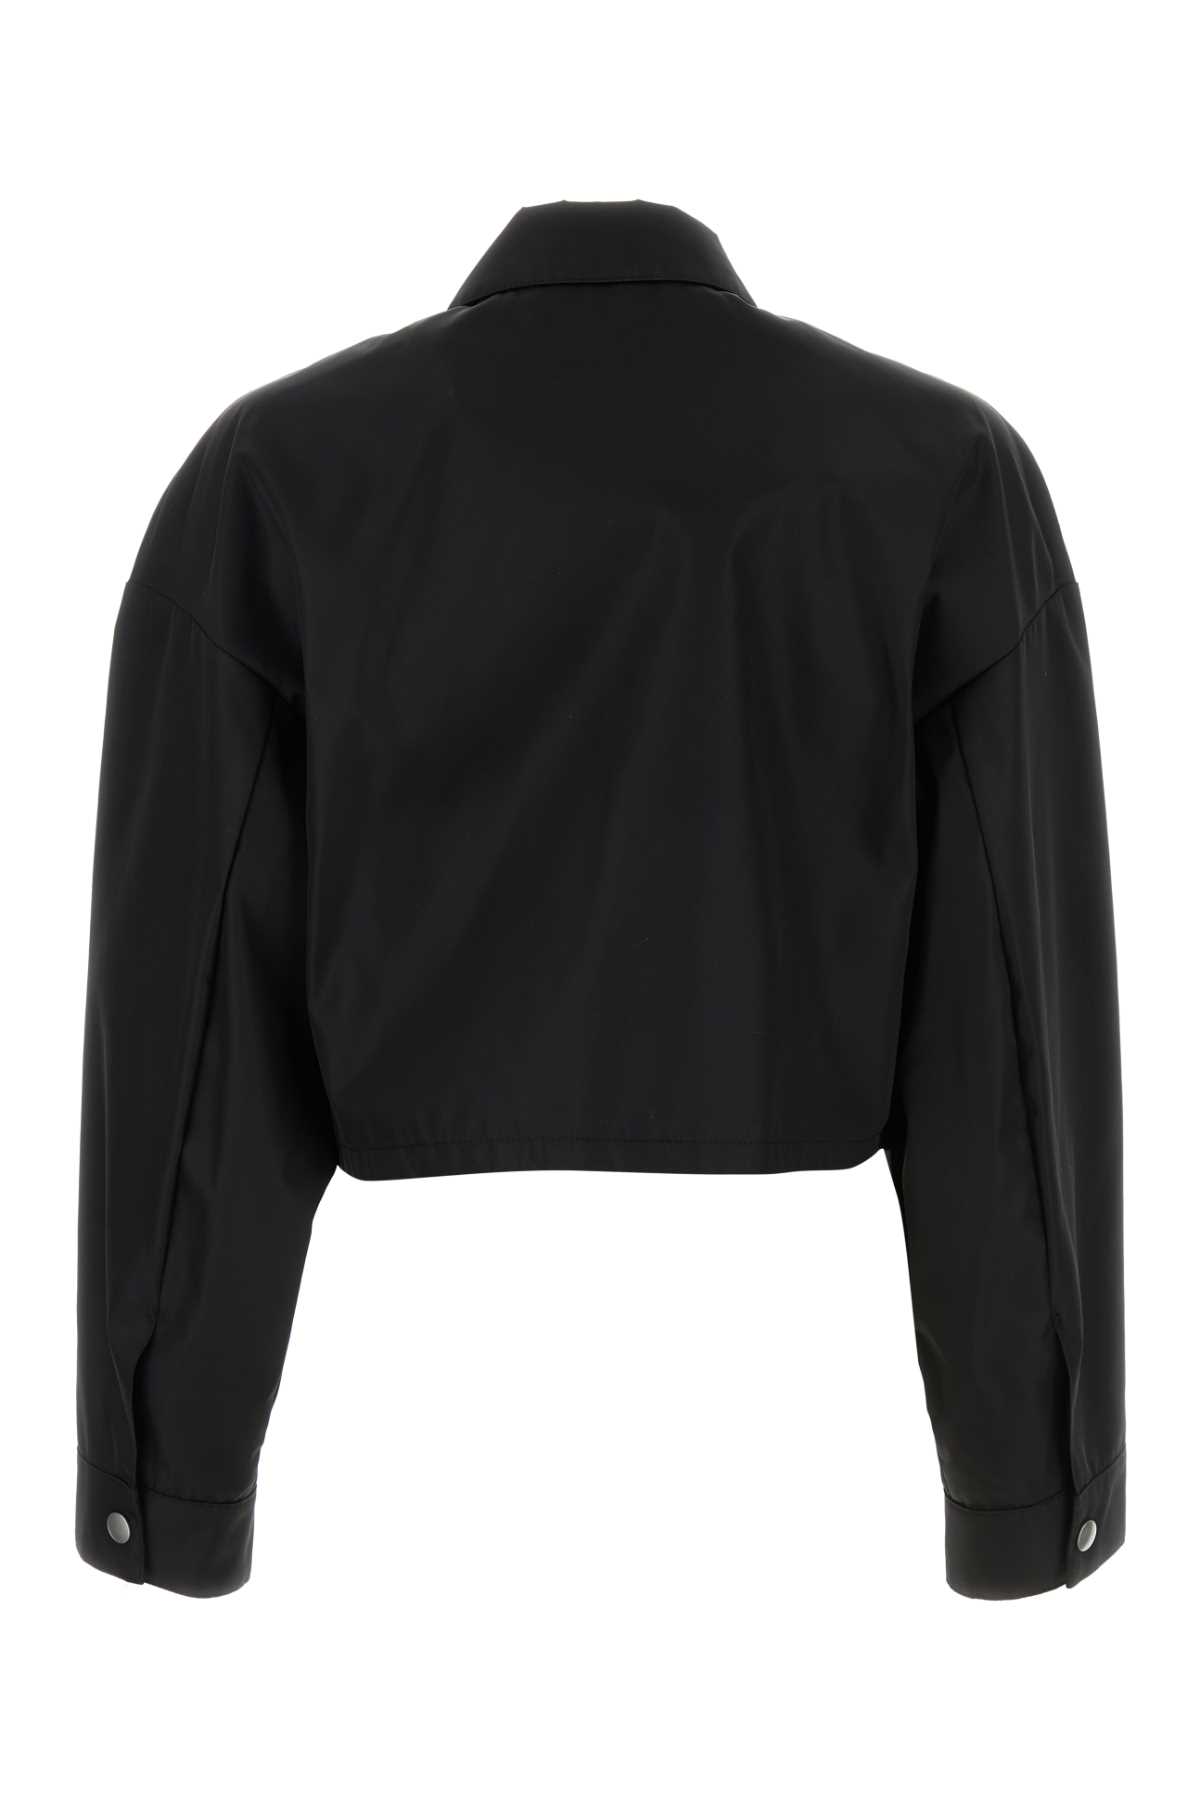 Prada Black Re-nylon Jacket In Nero